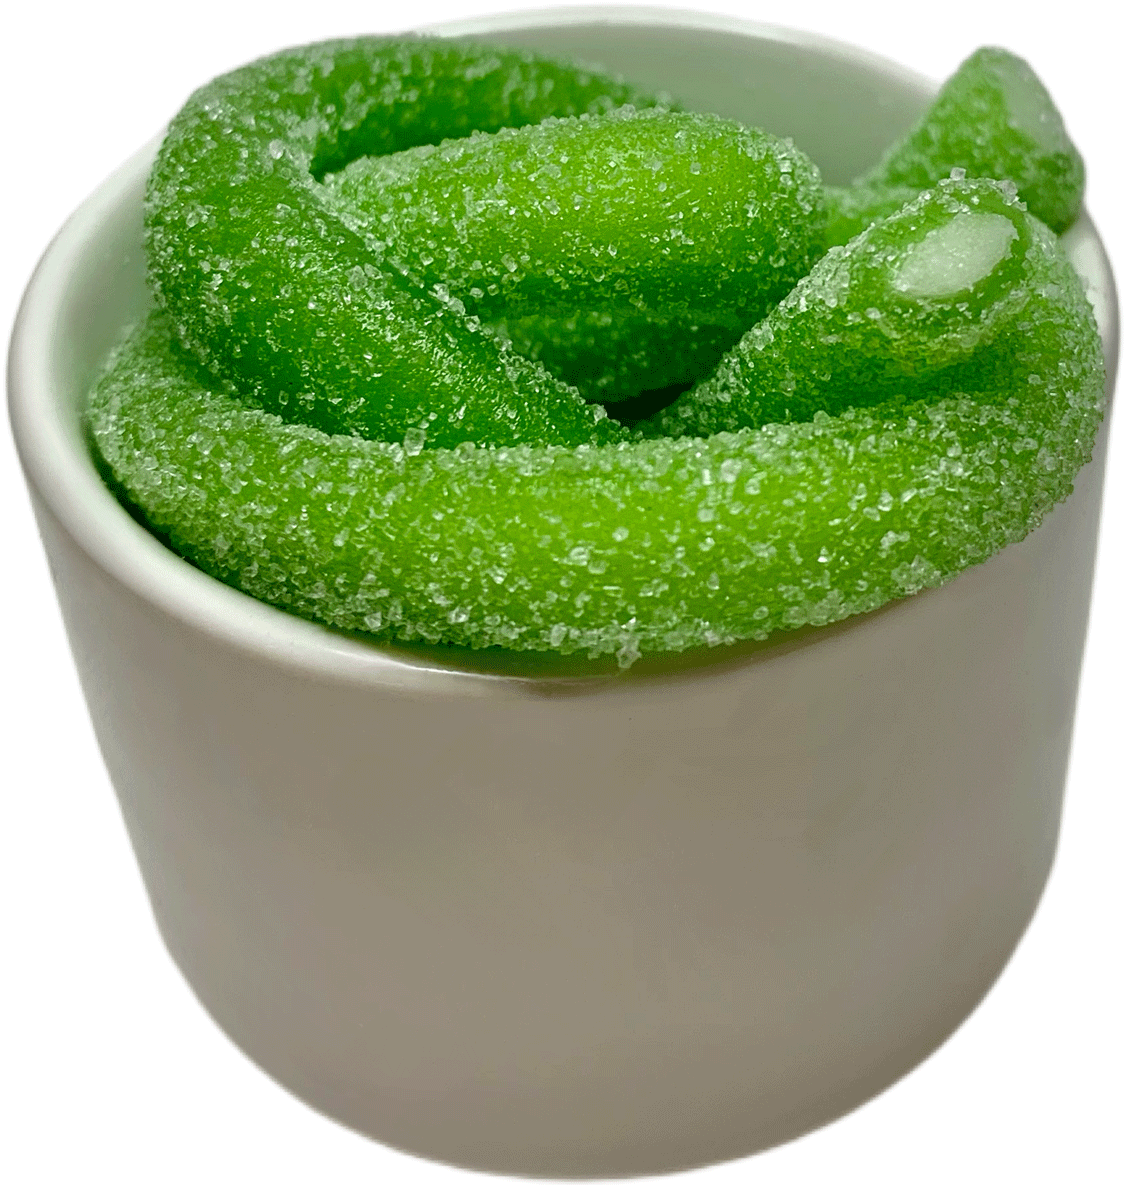 061 - Cordes de pomme aigre, vert